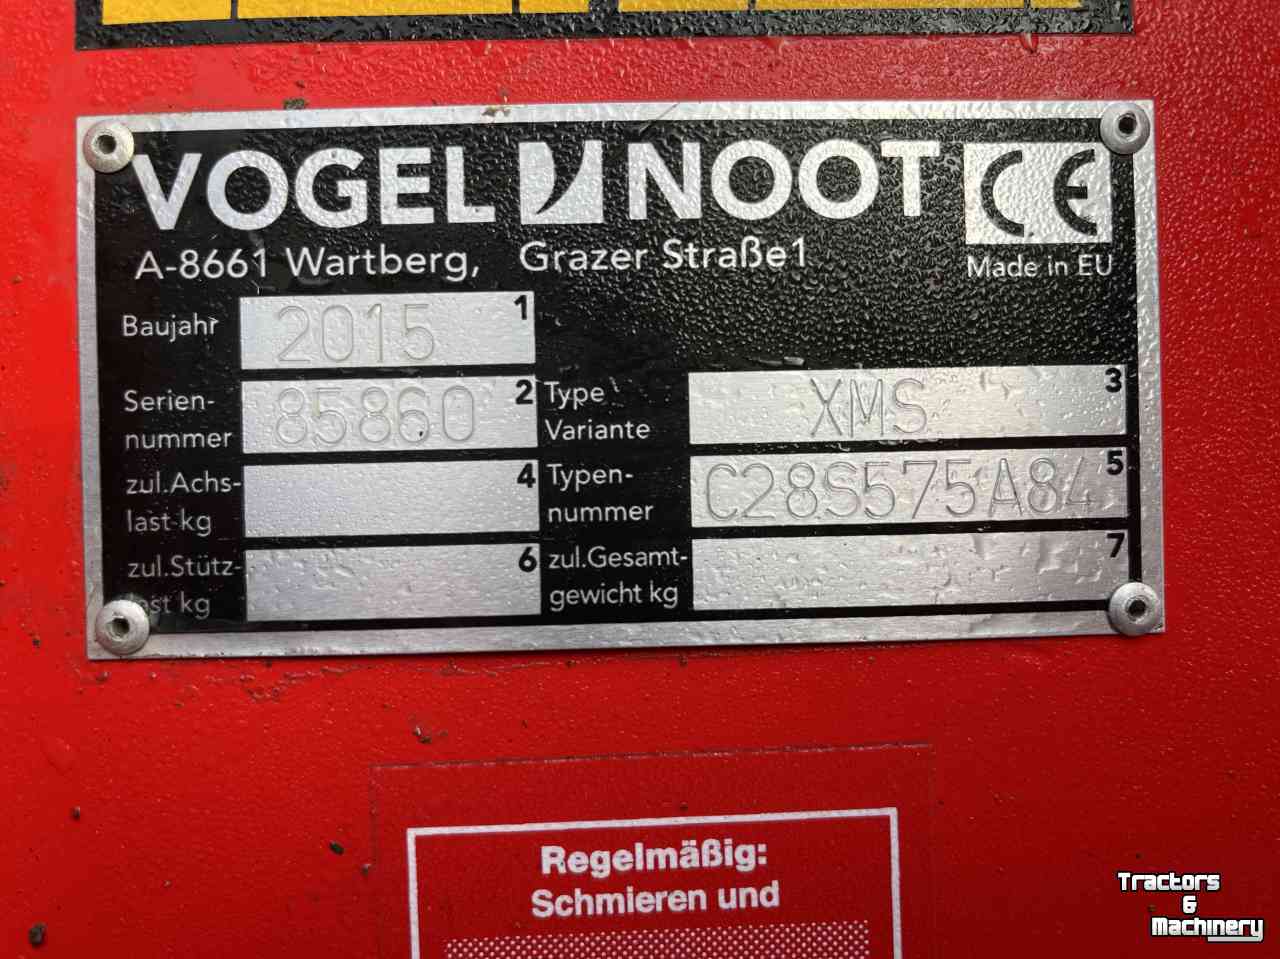 Ploegen Vogel & Noot XMS 5 schaar